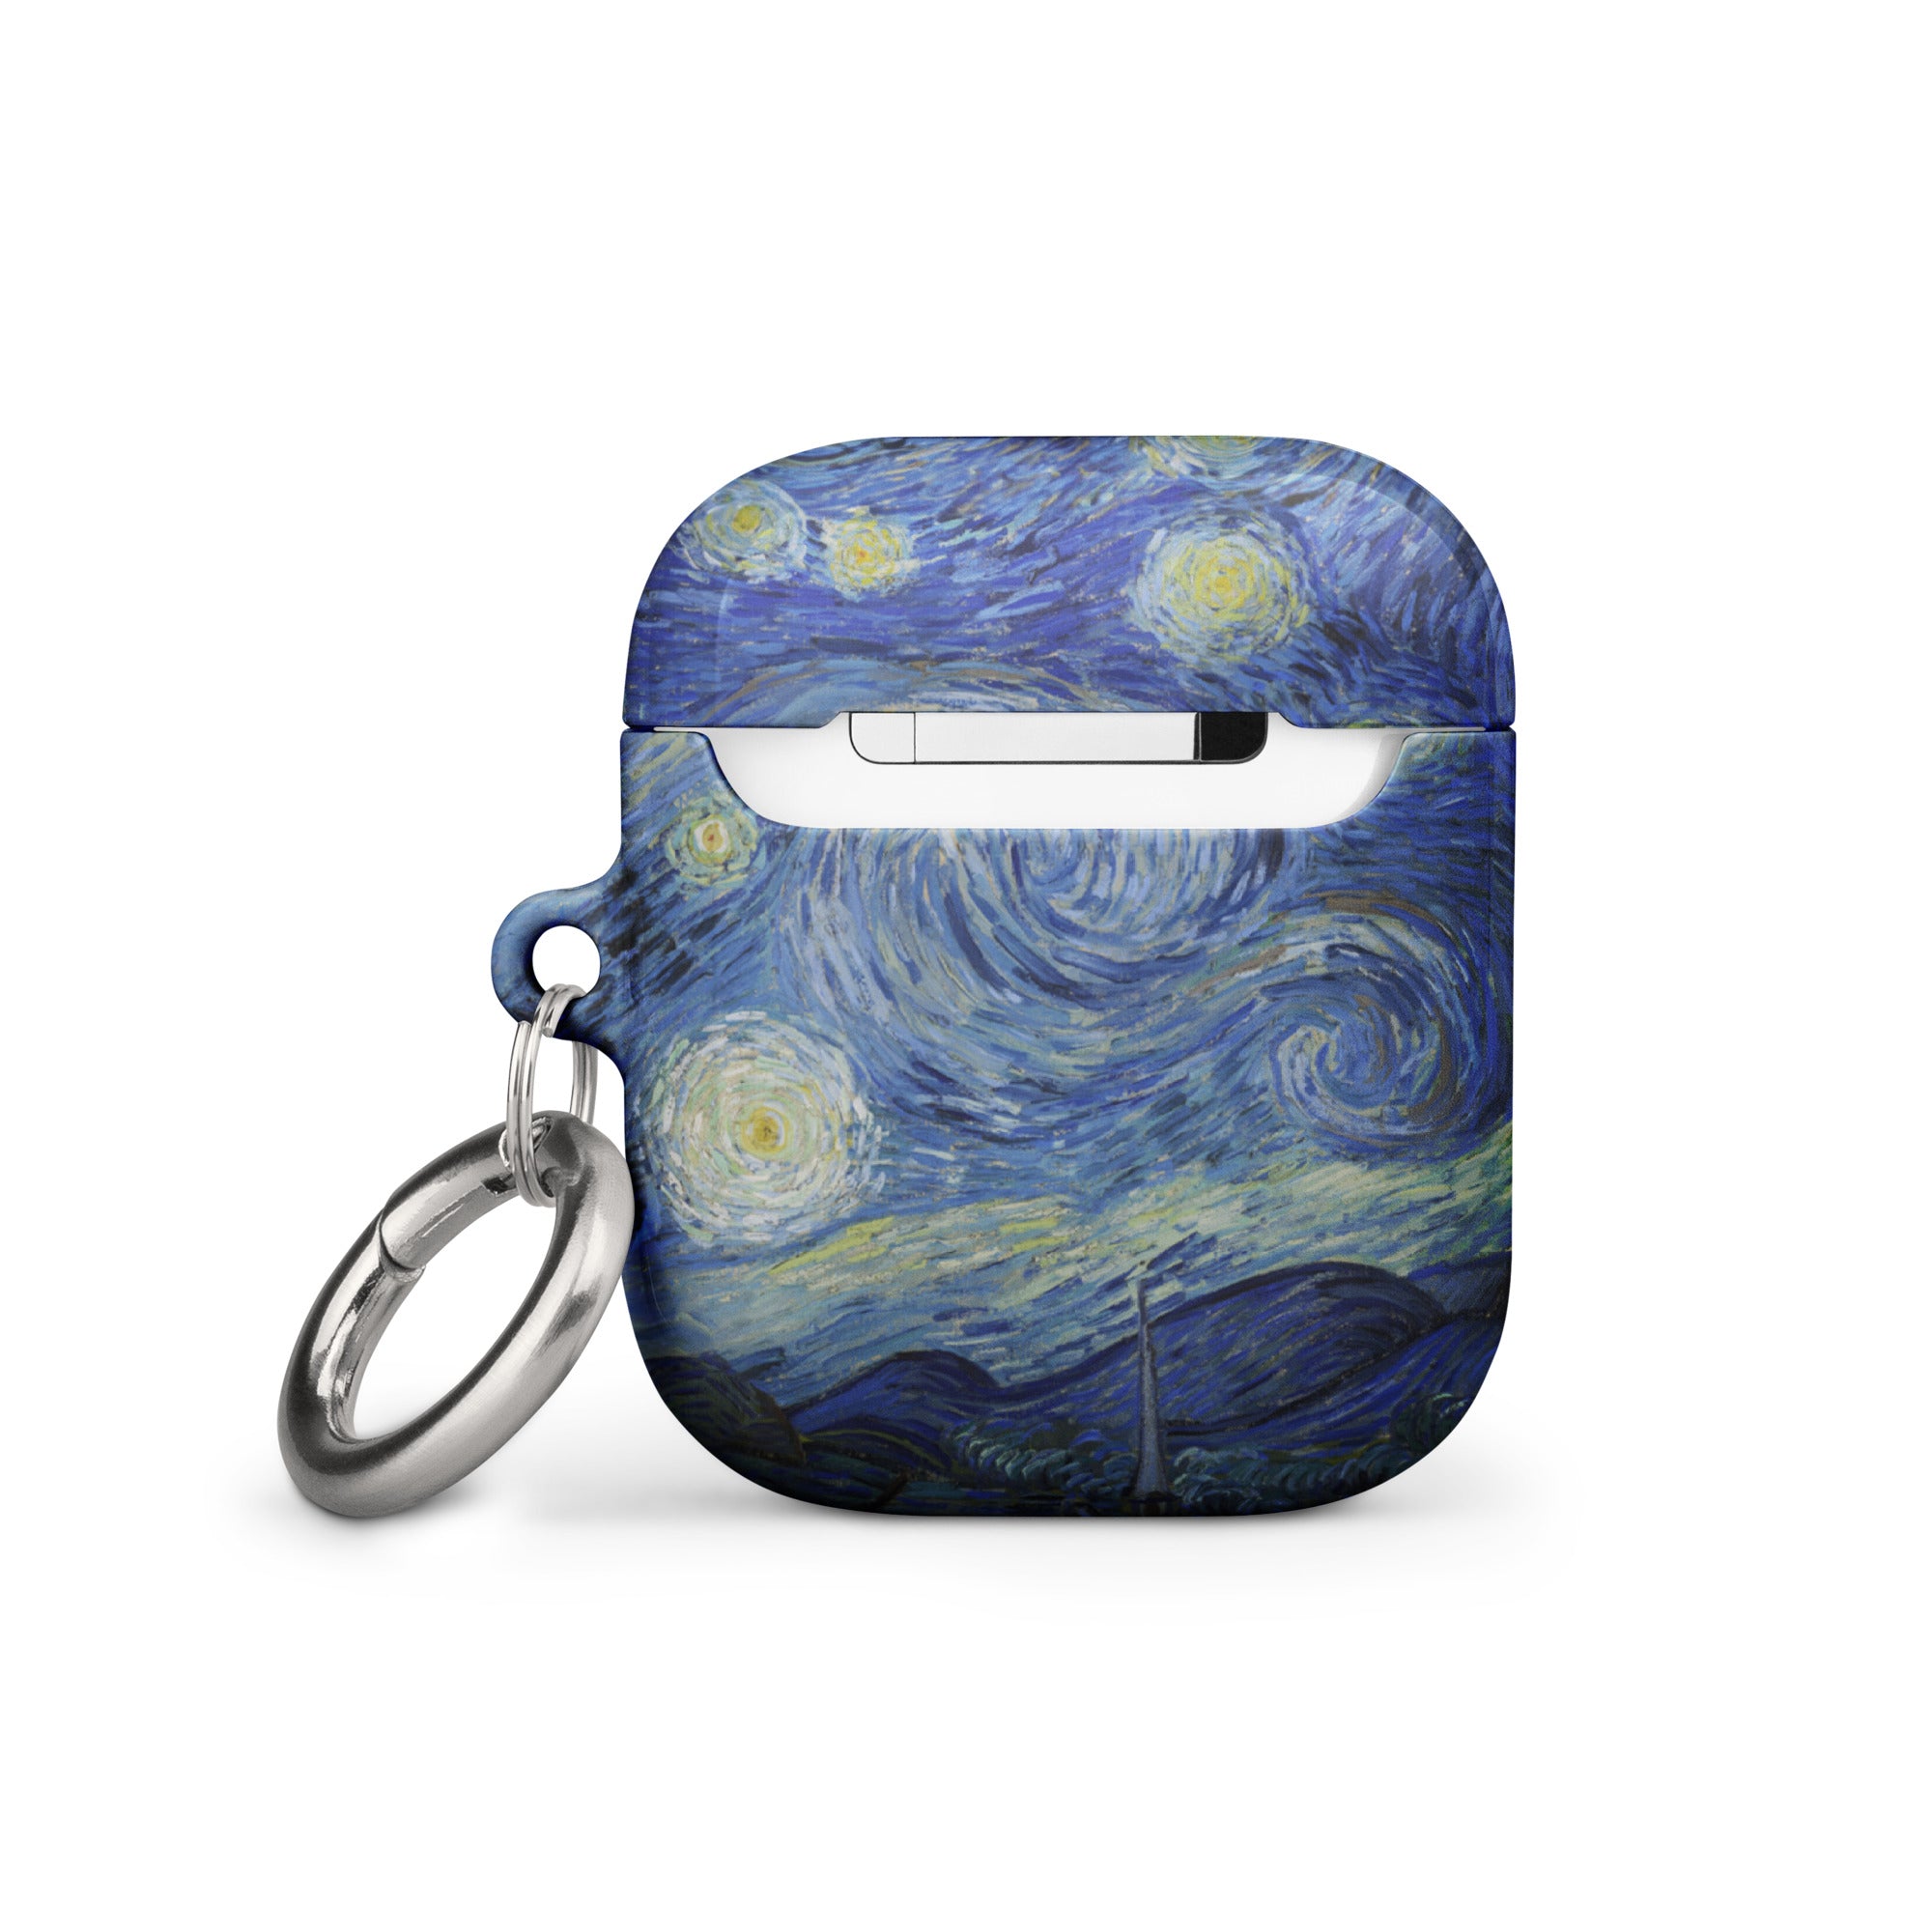 Vincent van Gogh „Sternennacht“, berühmtes Gemälde, AirPods®-Hülle | Premium-Kunsthülle für AirPods®